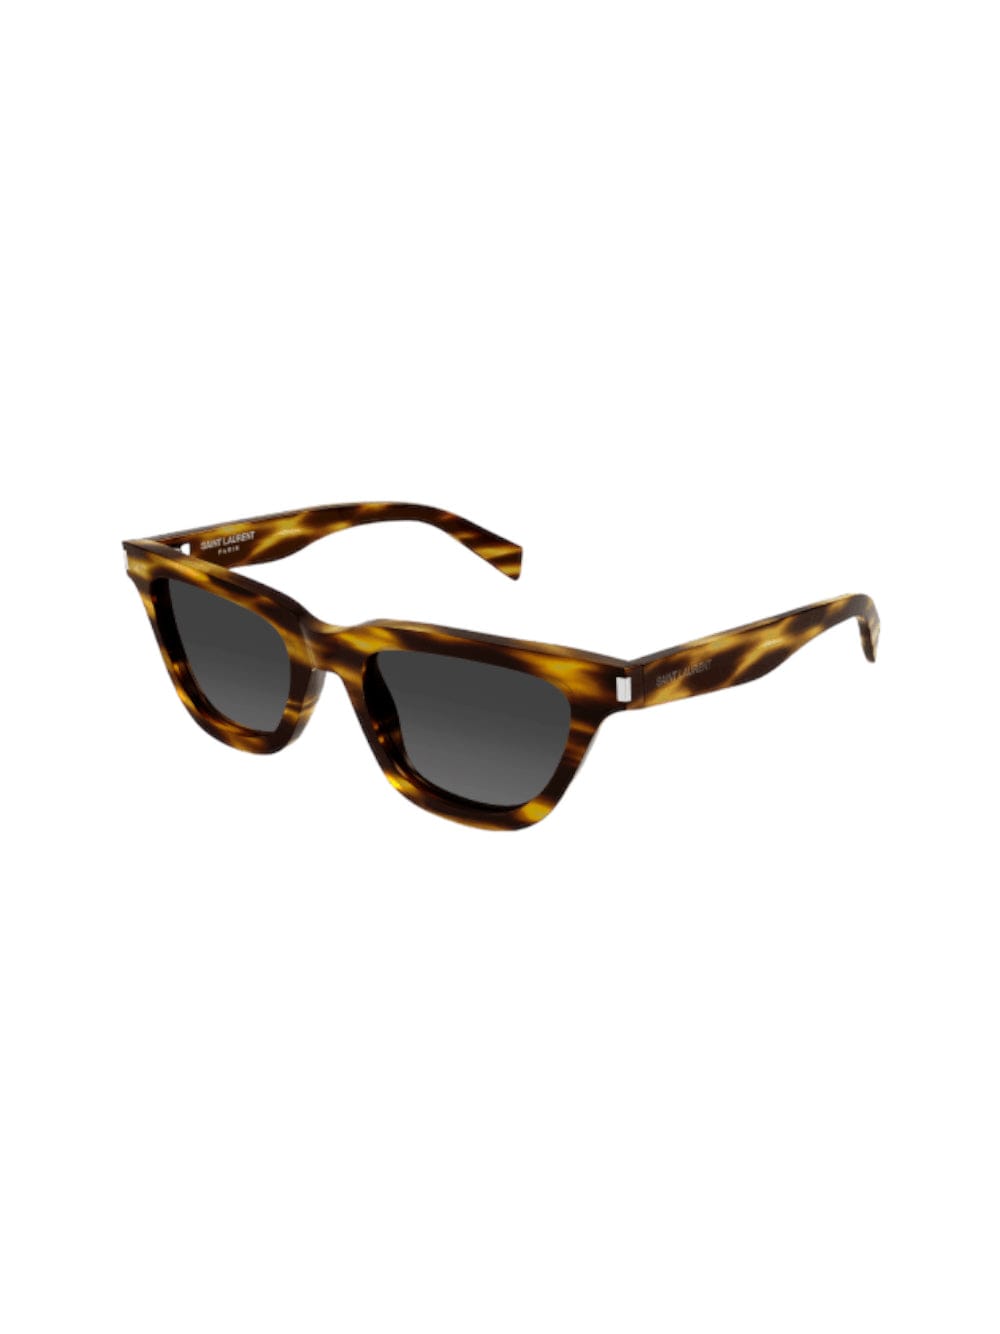 Saint Laurent Sl 462 - Sulpice - Light Havana Sunglasses